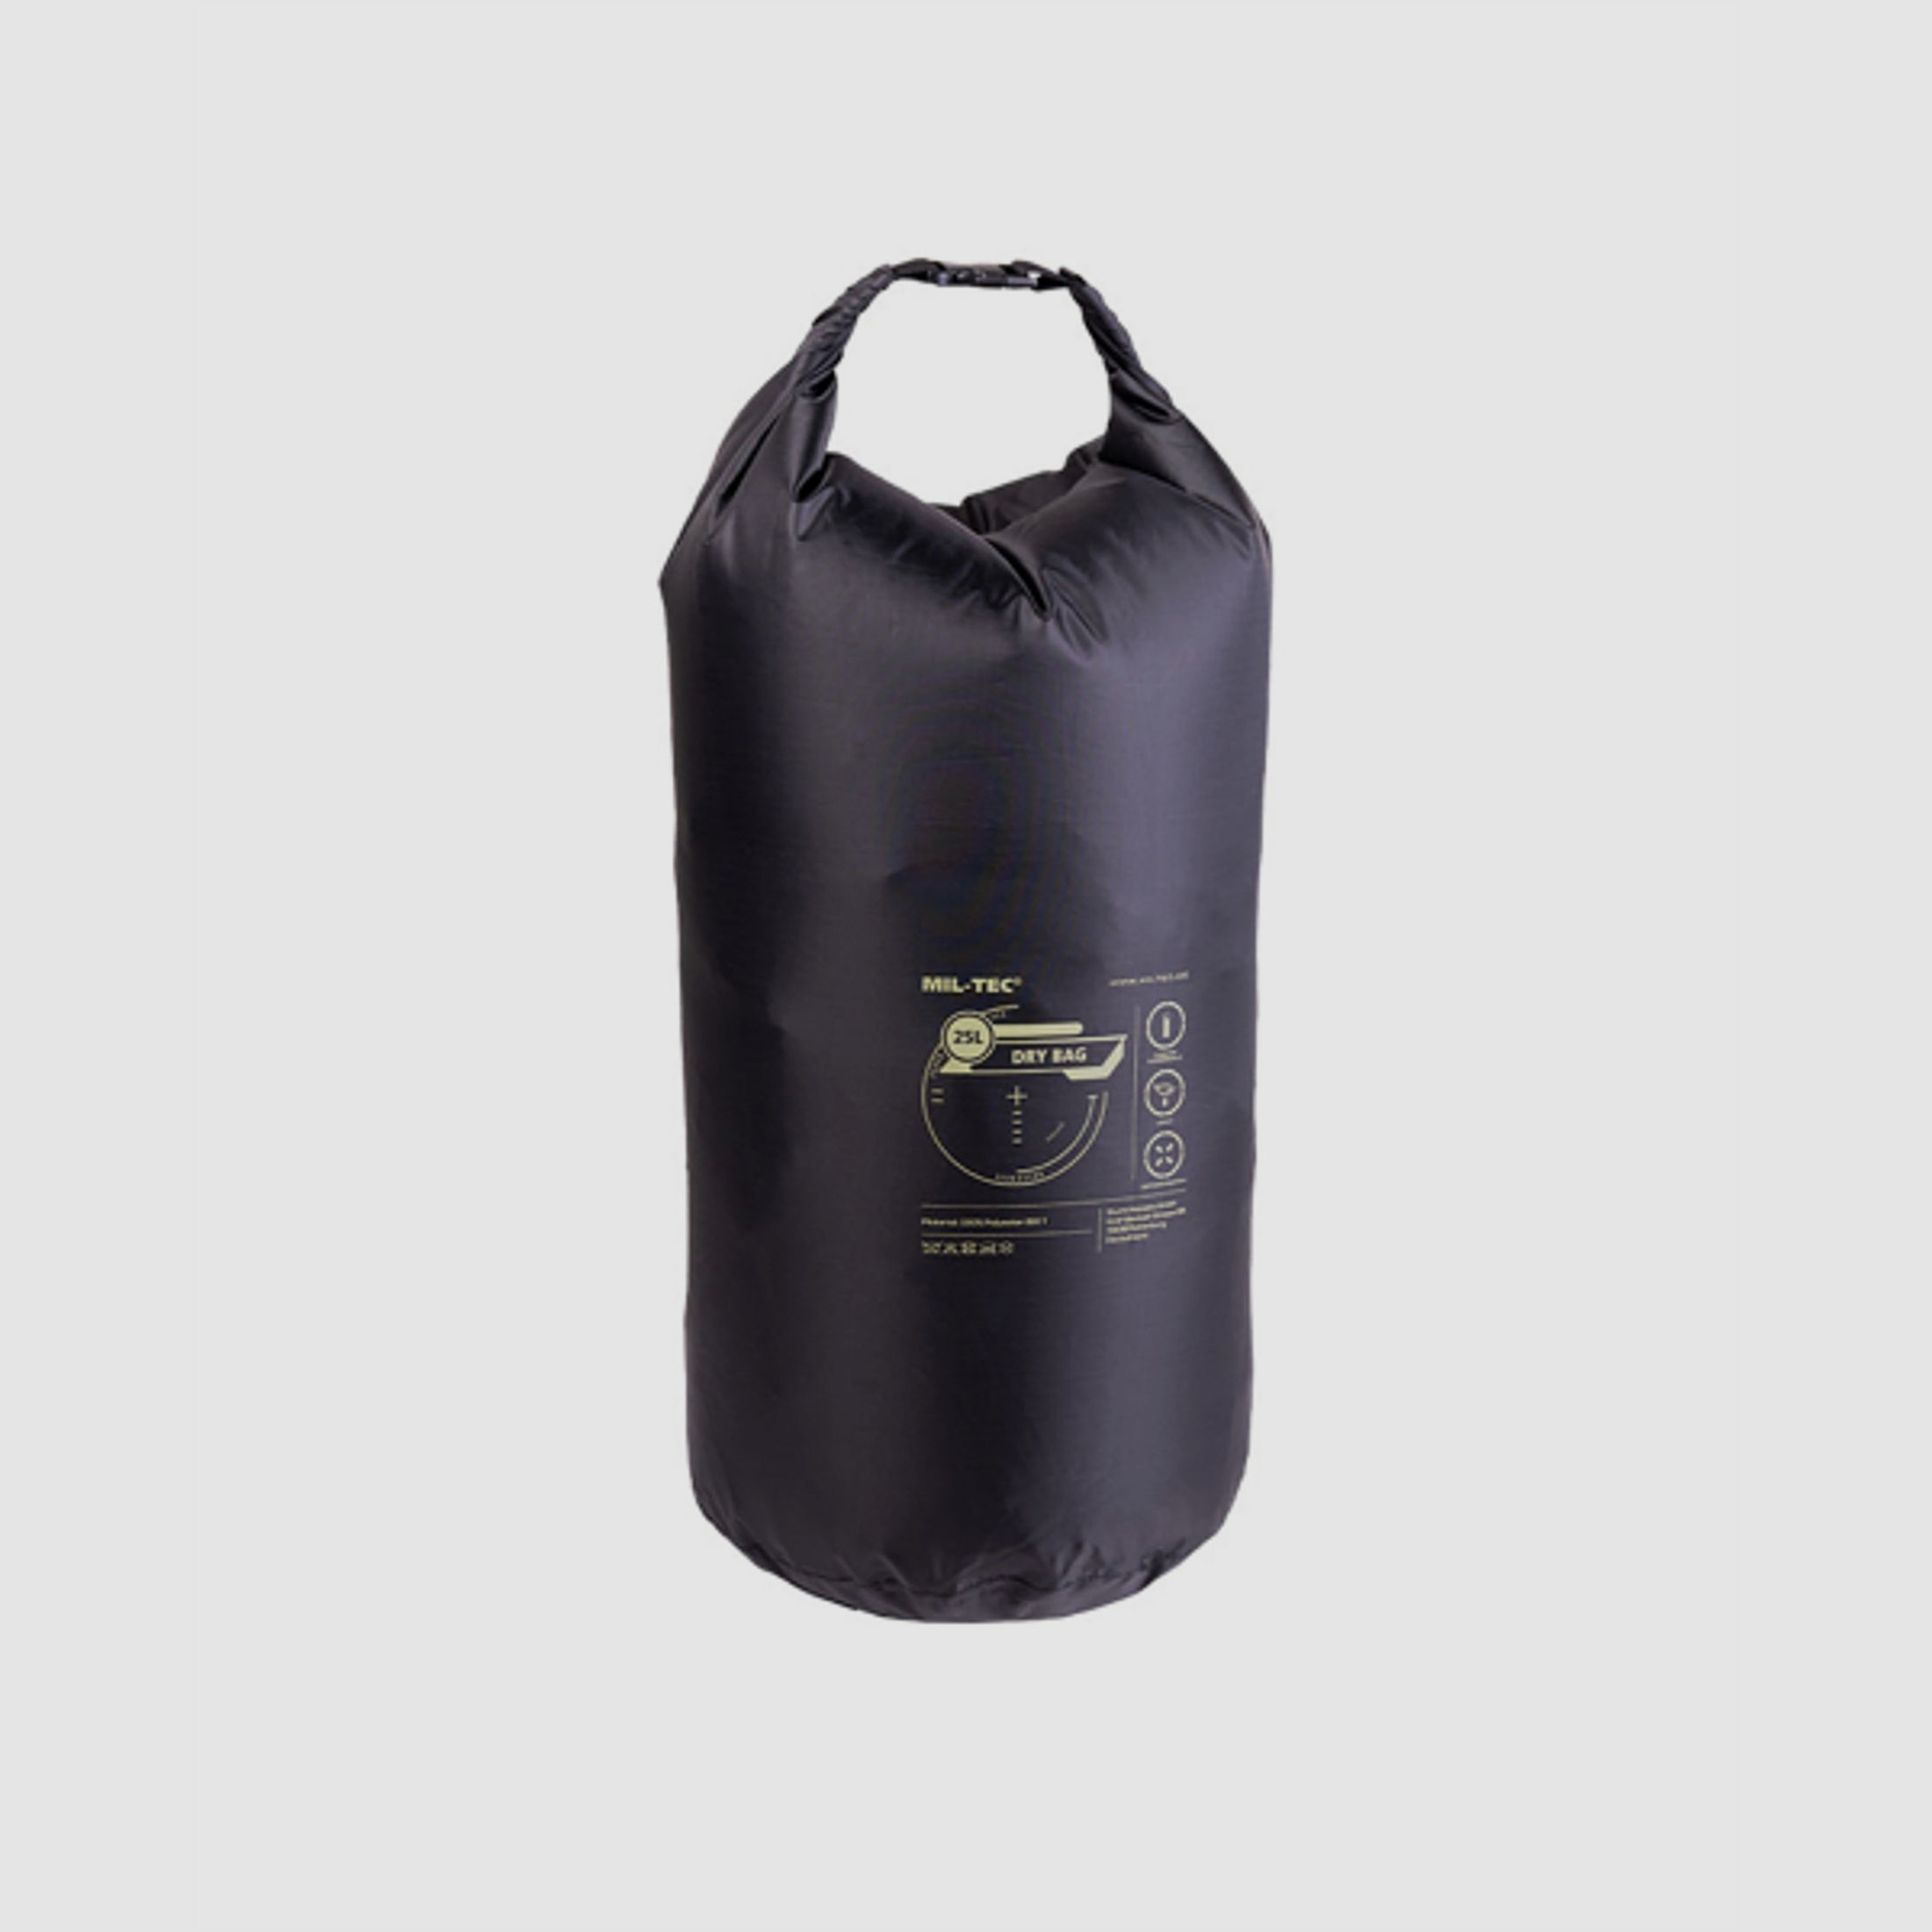 Dry Bag - 25 Liter - wasserfest - Schwarz - Packsack - Schutz vor Regen und Feuchtigkeit